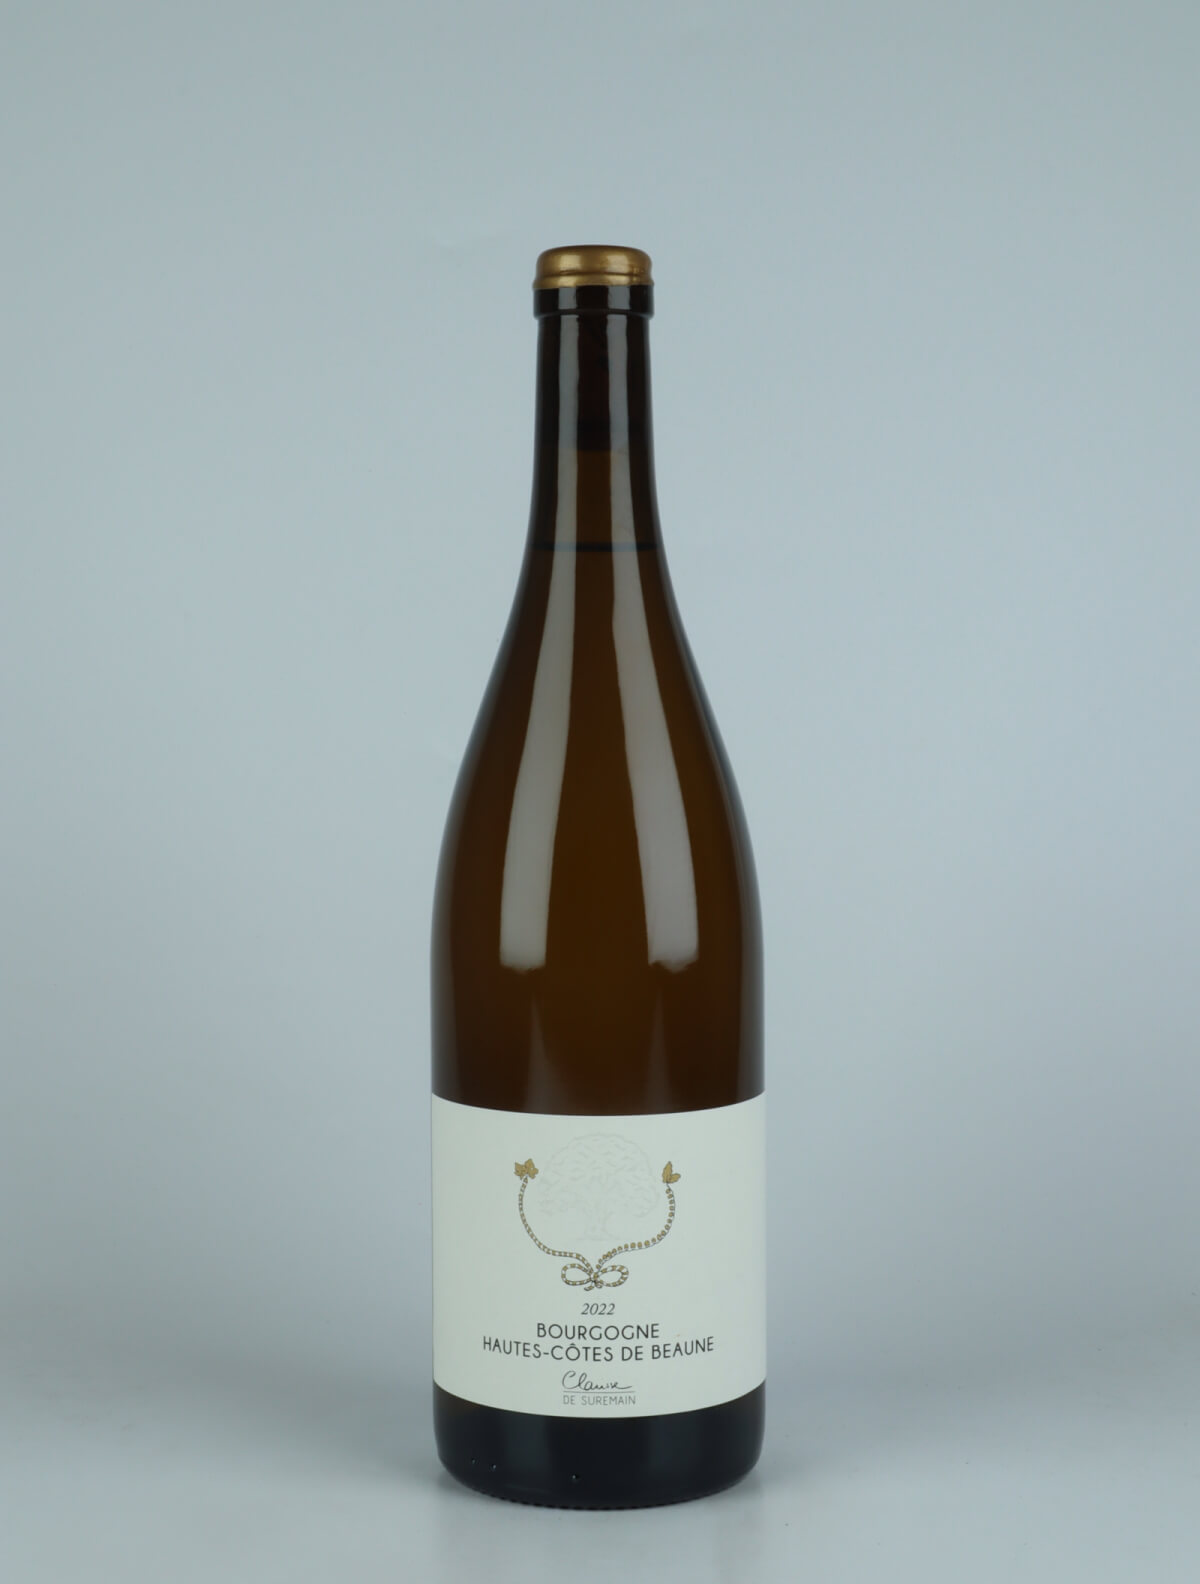 A bottle 2022 Hautes-Côtes de Beaune Blanc White wine from Clarisse de Suremain, Burgundy in France